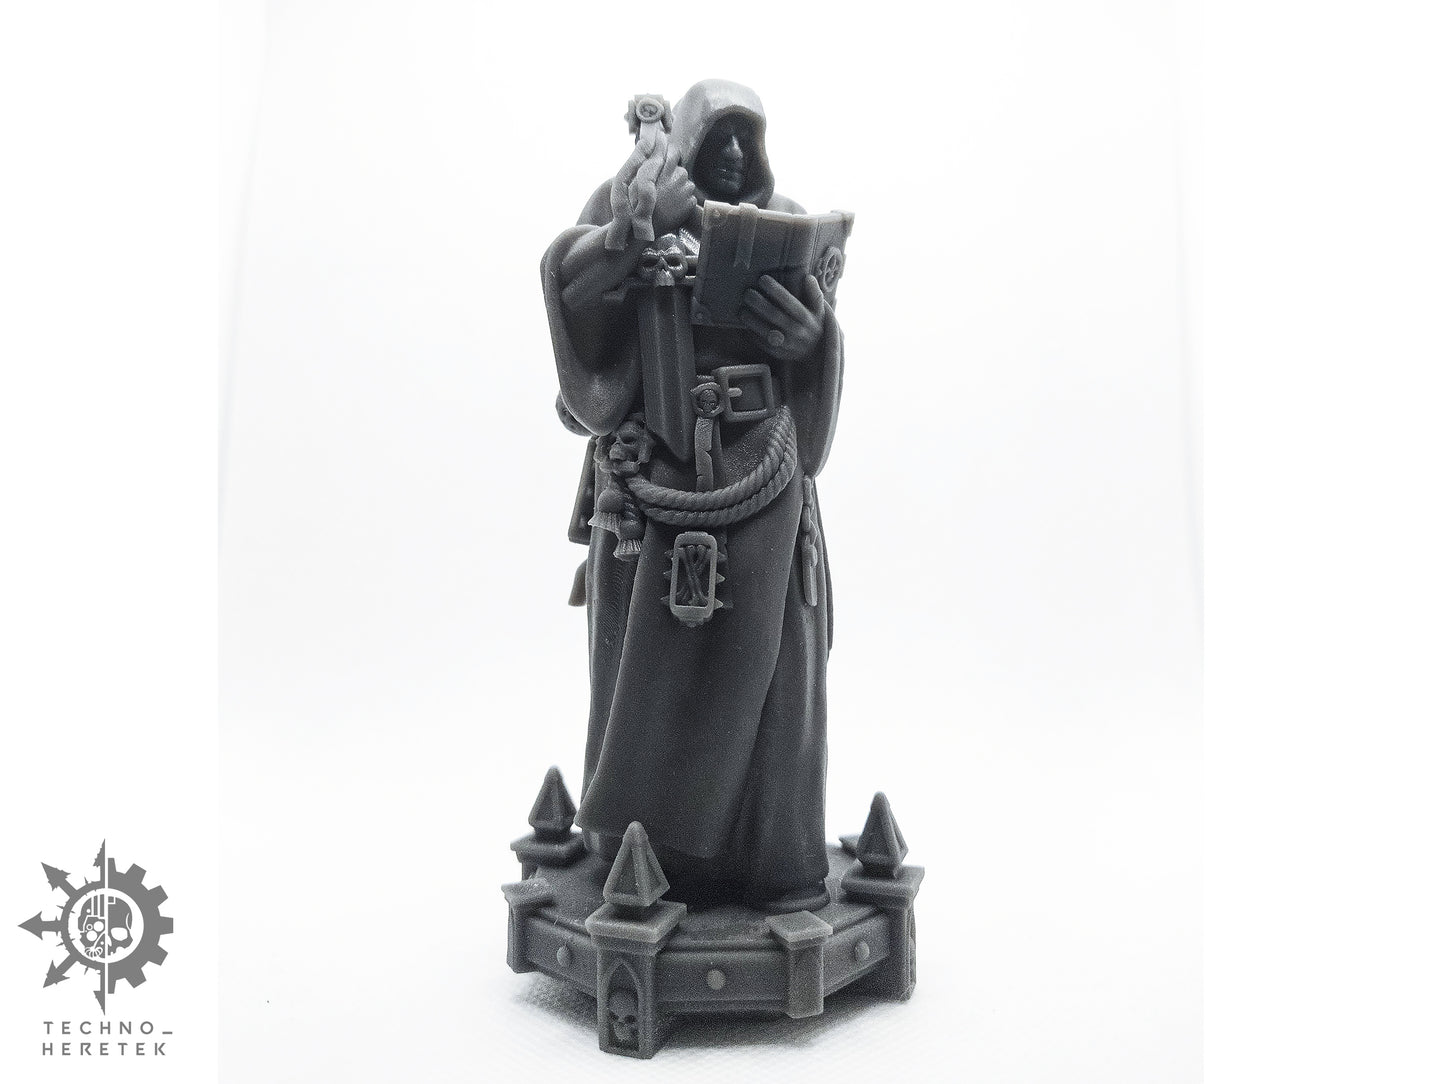 Imperial Ministorum Priest Statue